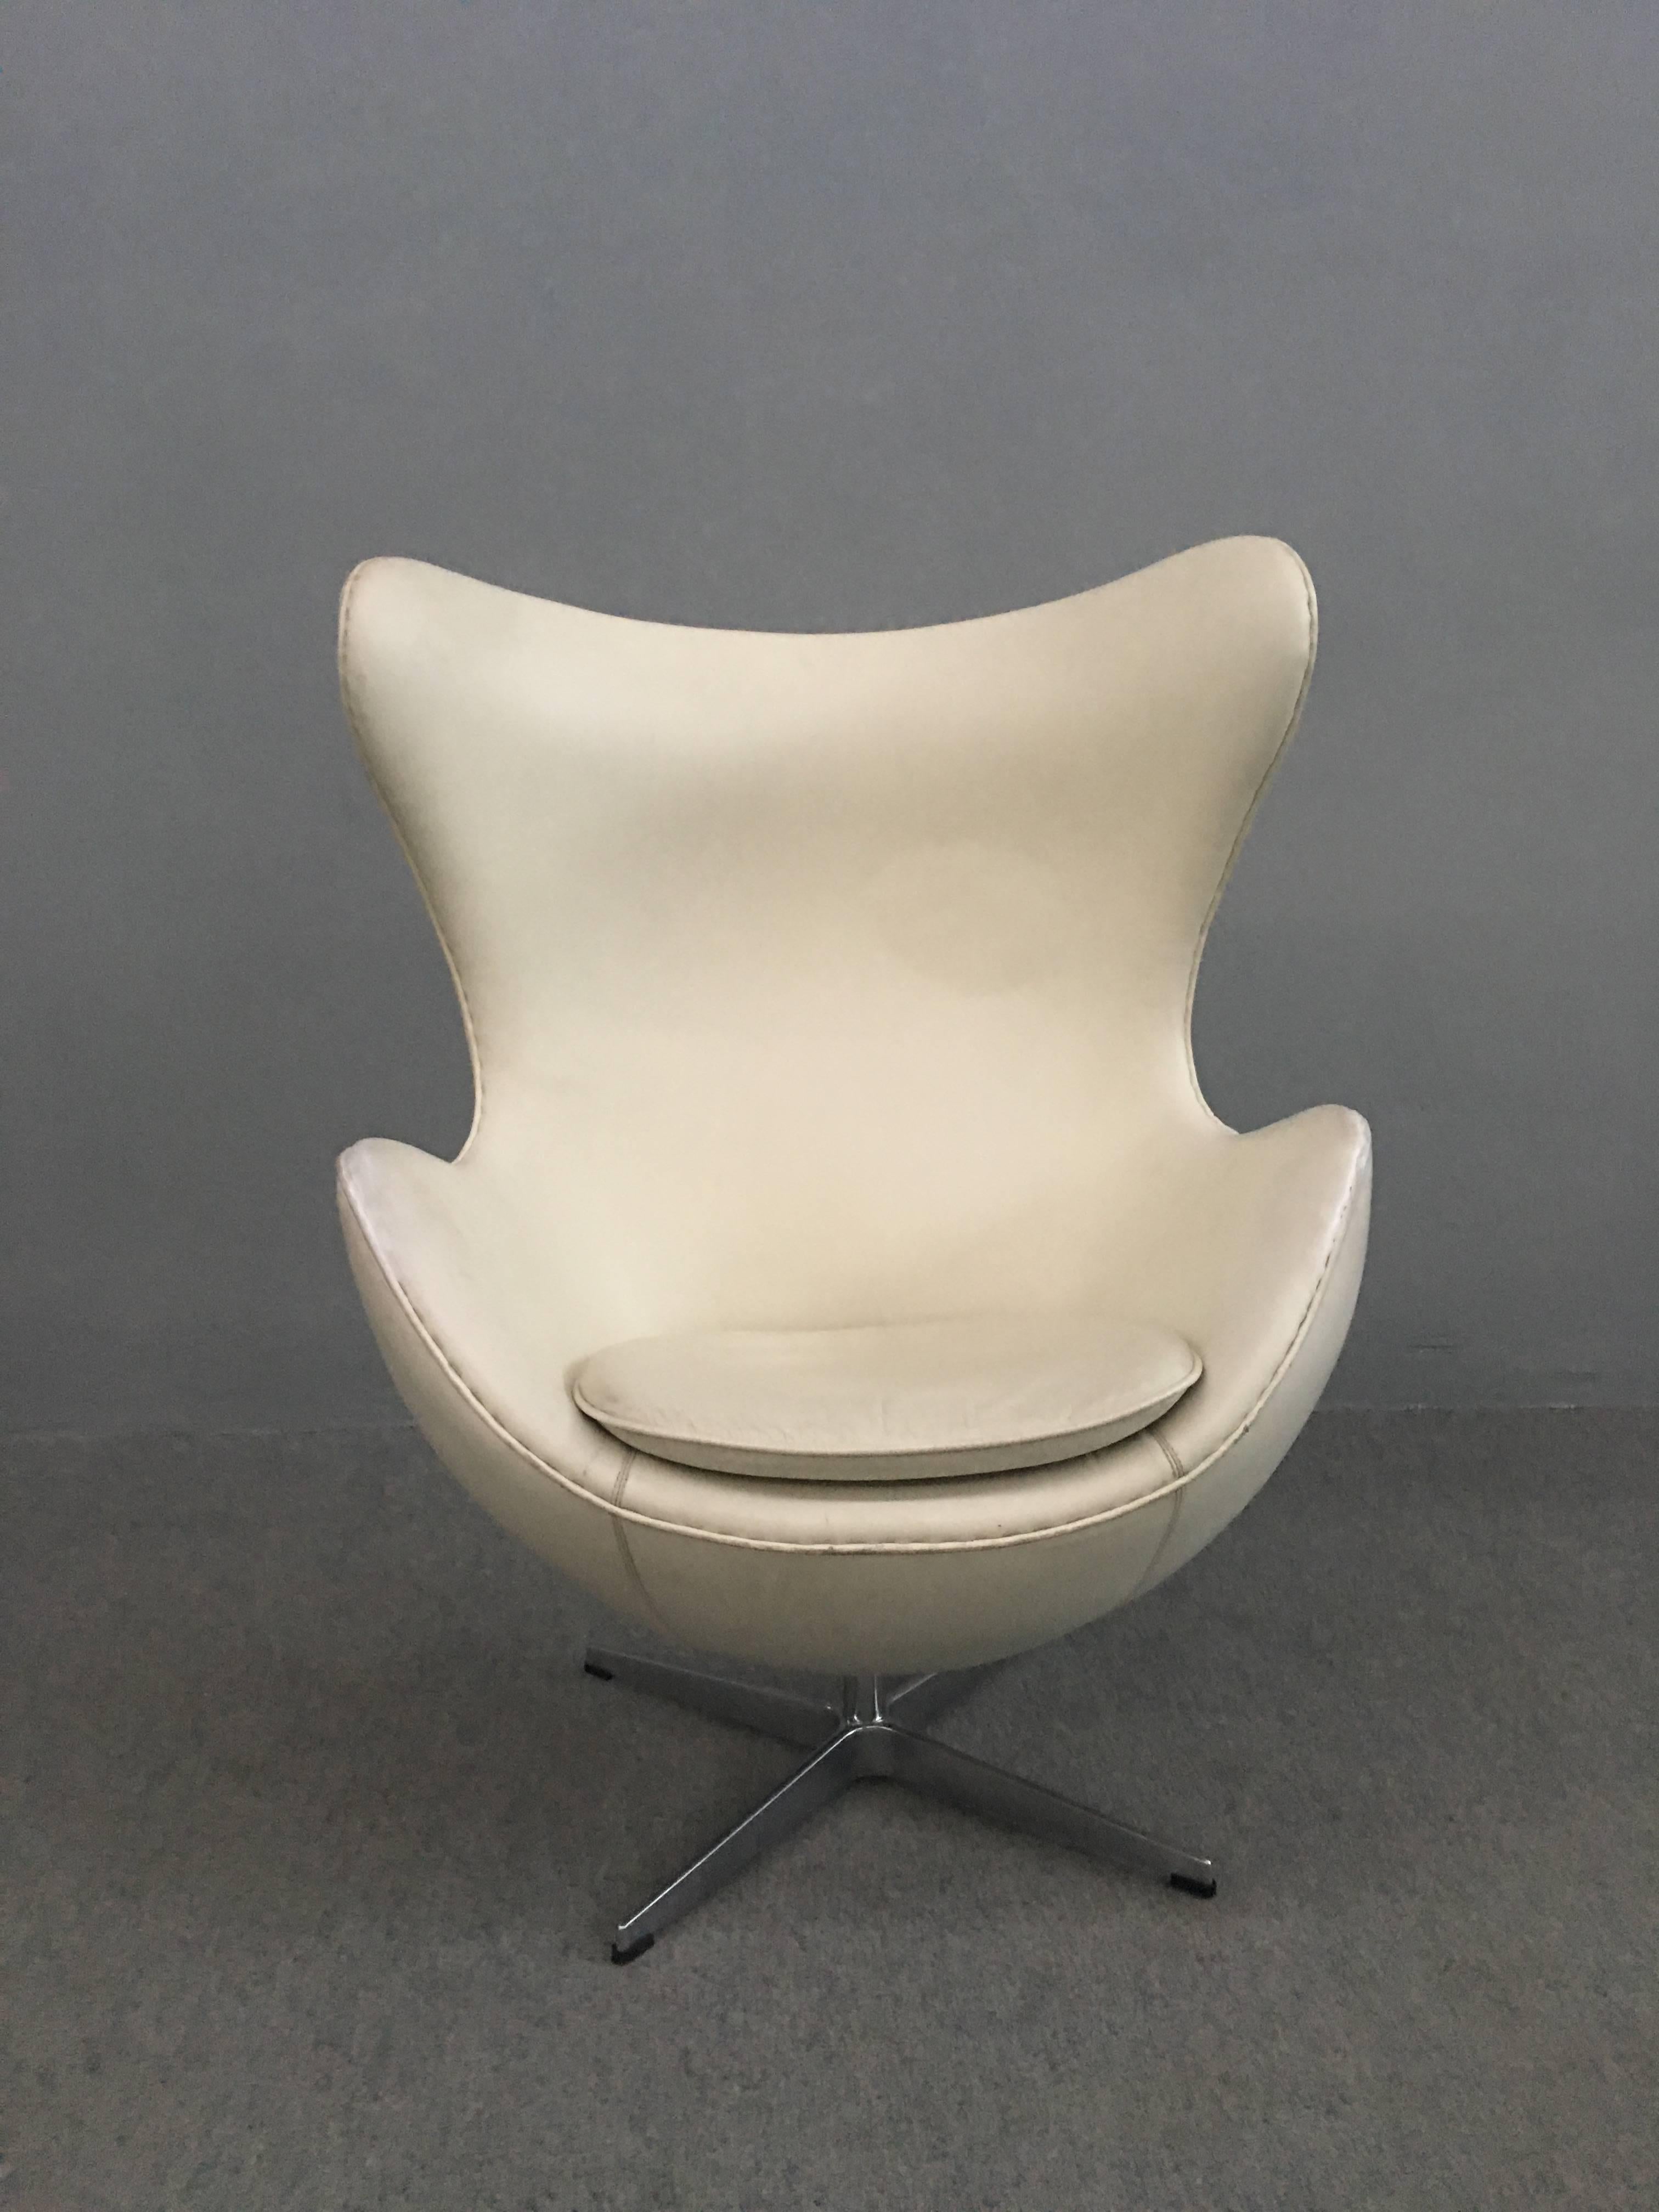 Danish Egg Chair by Arne Jacobsen